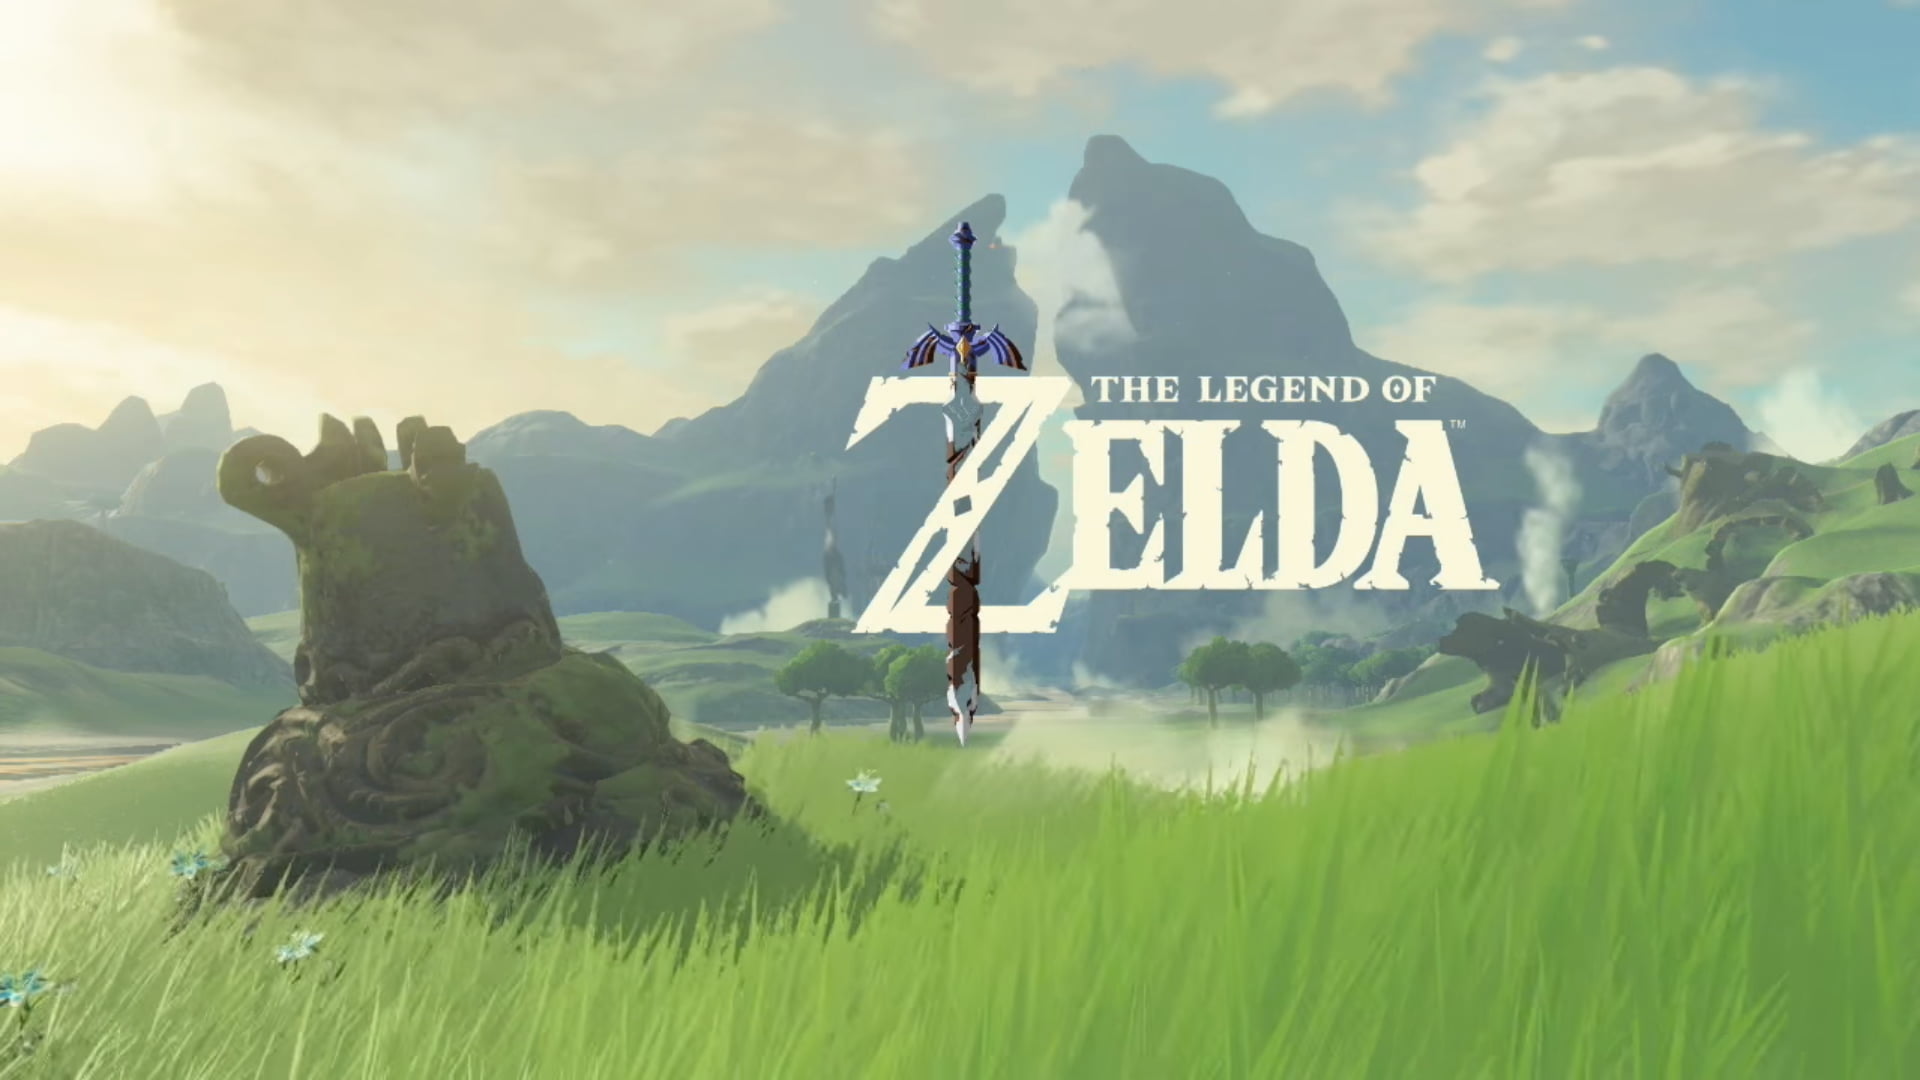 The Legend of Zelda poster, The Legend of Zelda, The Legend of Zelda: Breath of the Wild, video games, Master Sword